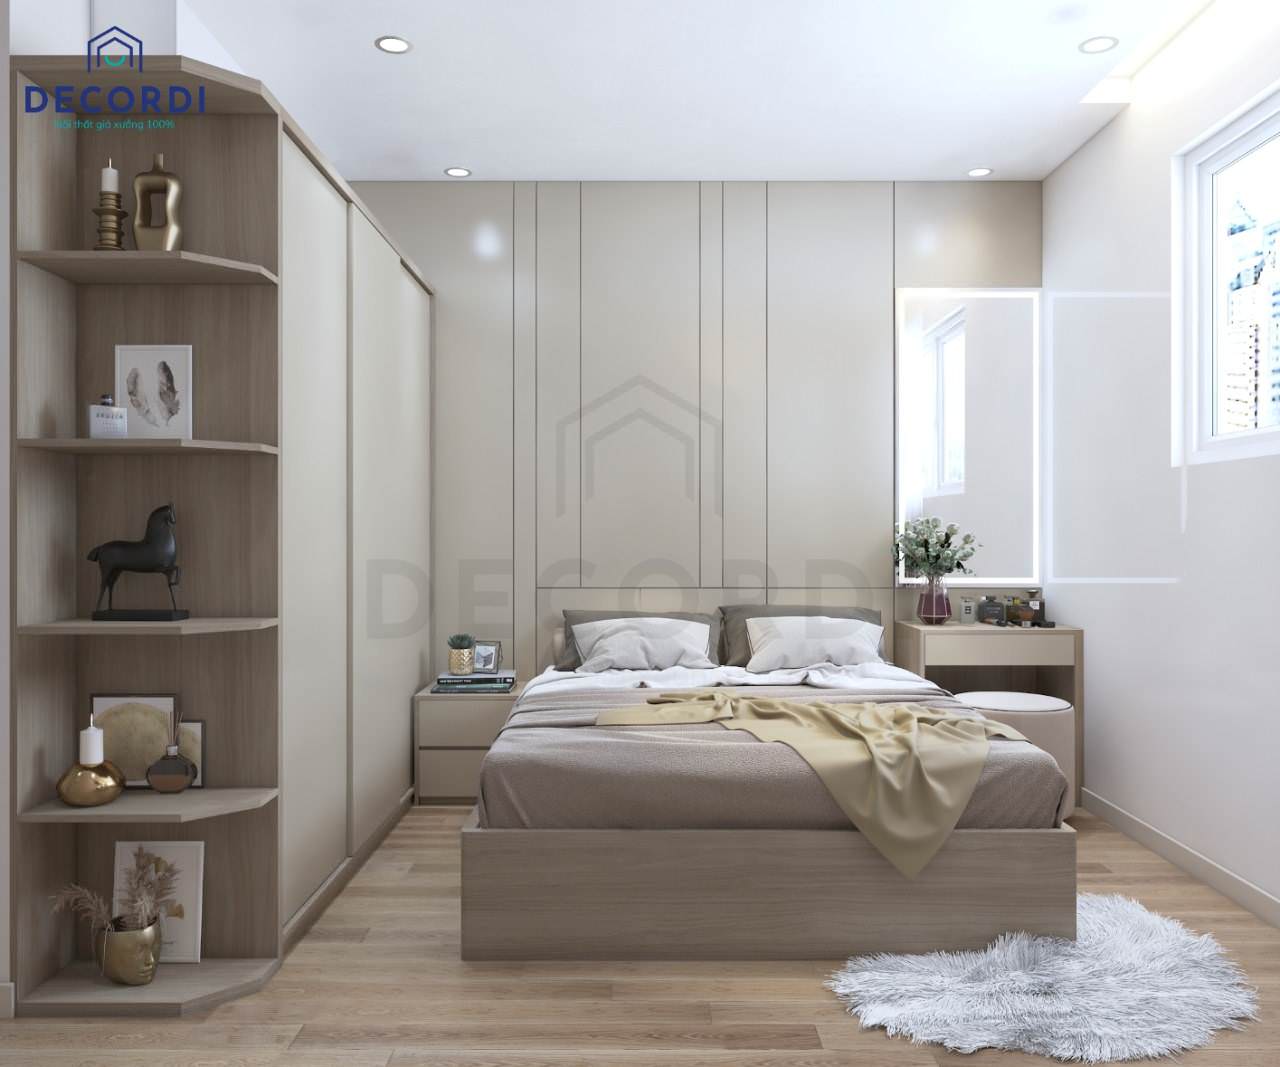 Thiết kế nội thất phòng ngủ 3x4m hiện đại với gam màu kem sang trọng